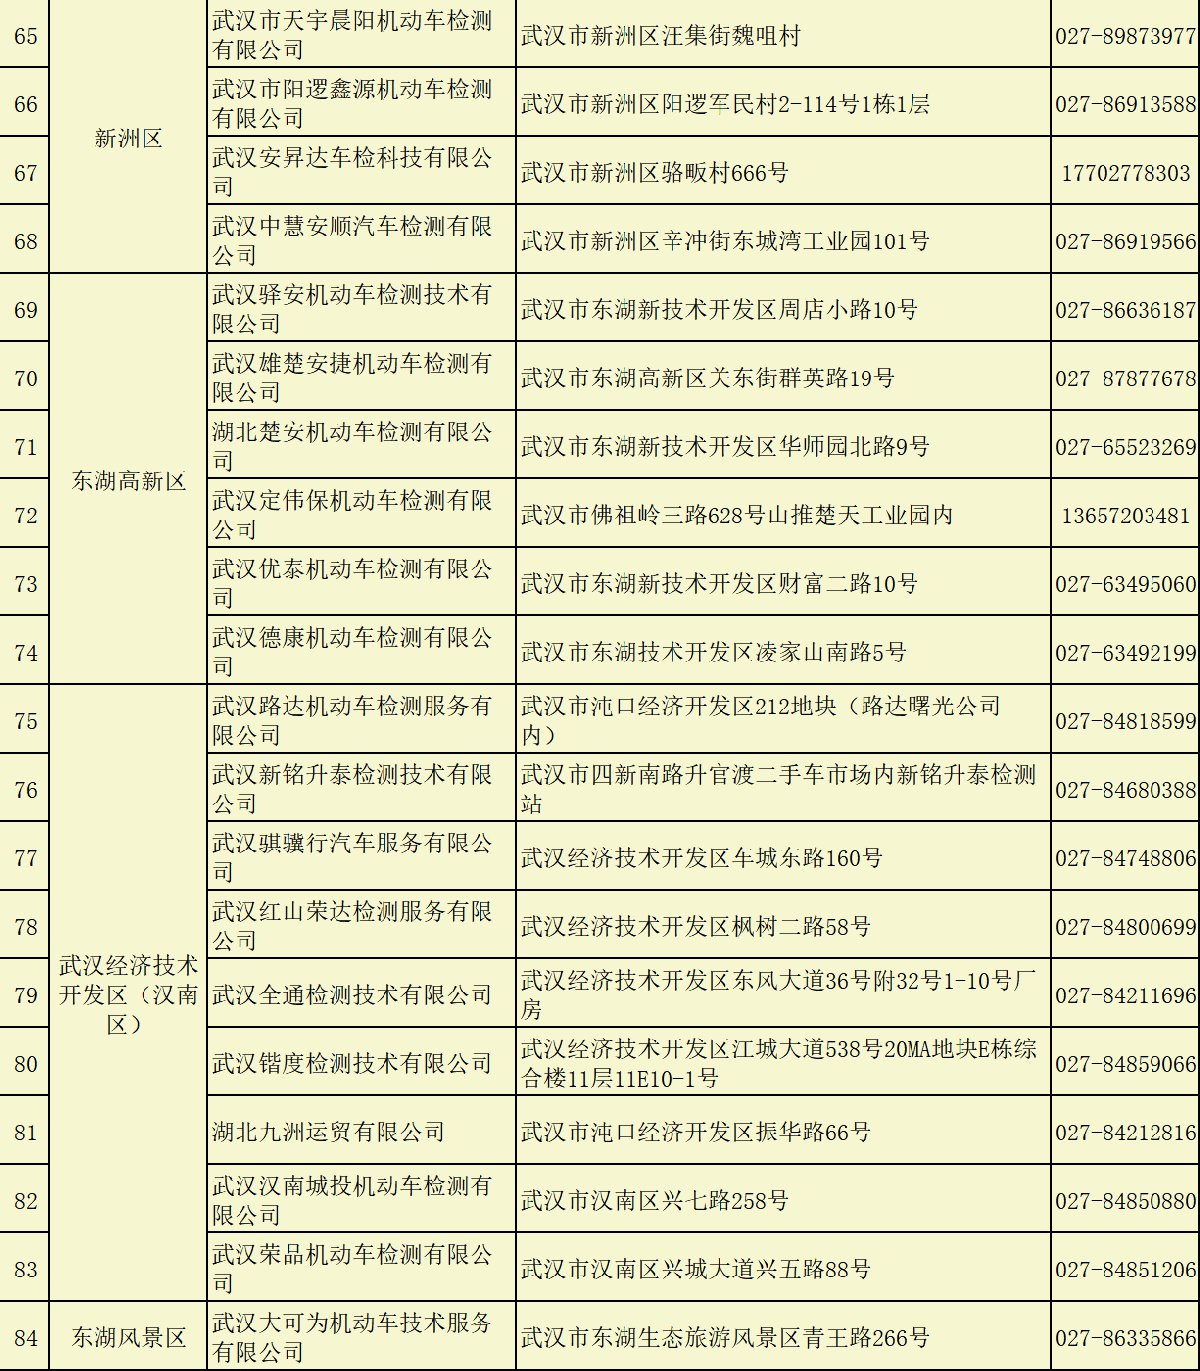 地址+电话 武汉机动车检验机构名单